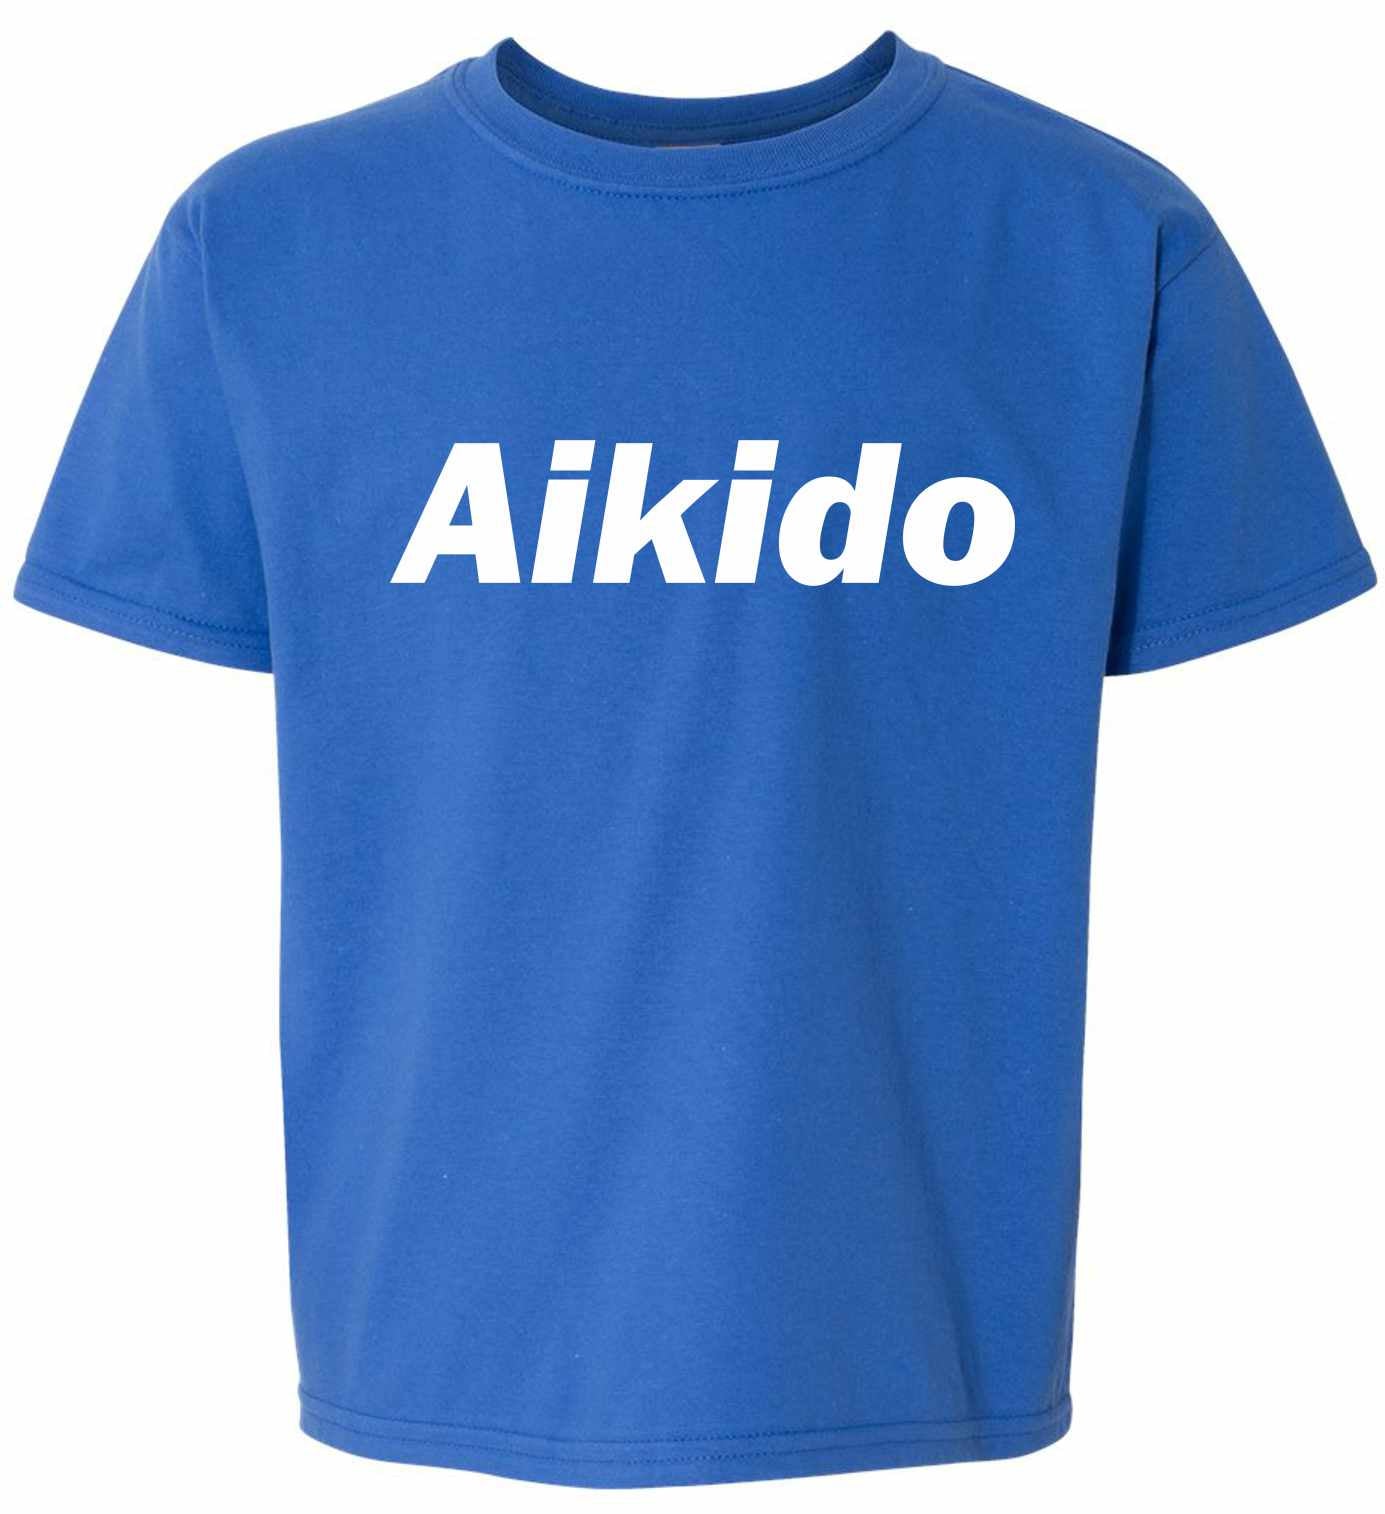 Aikido on Kids T-Shirt